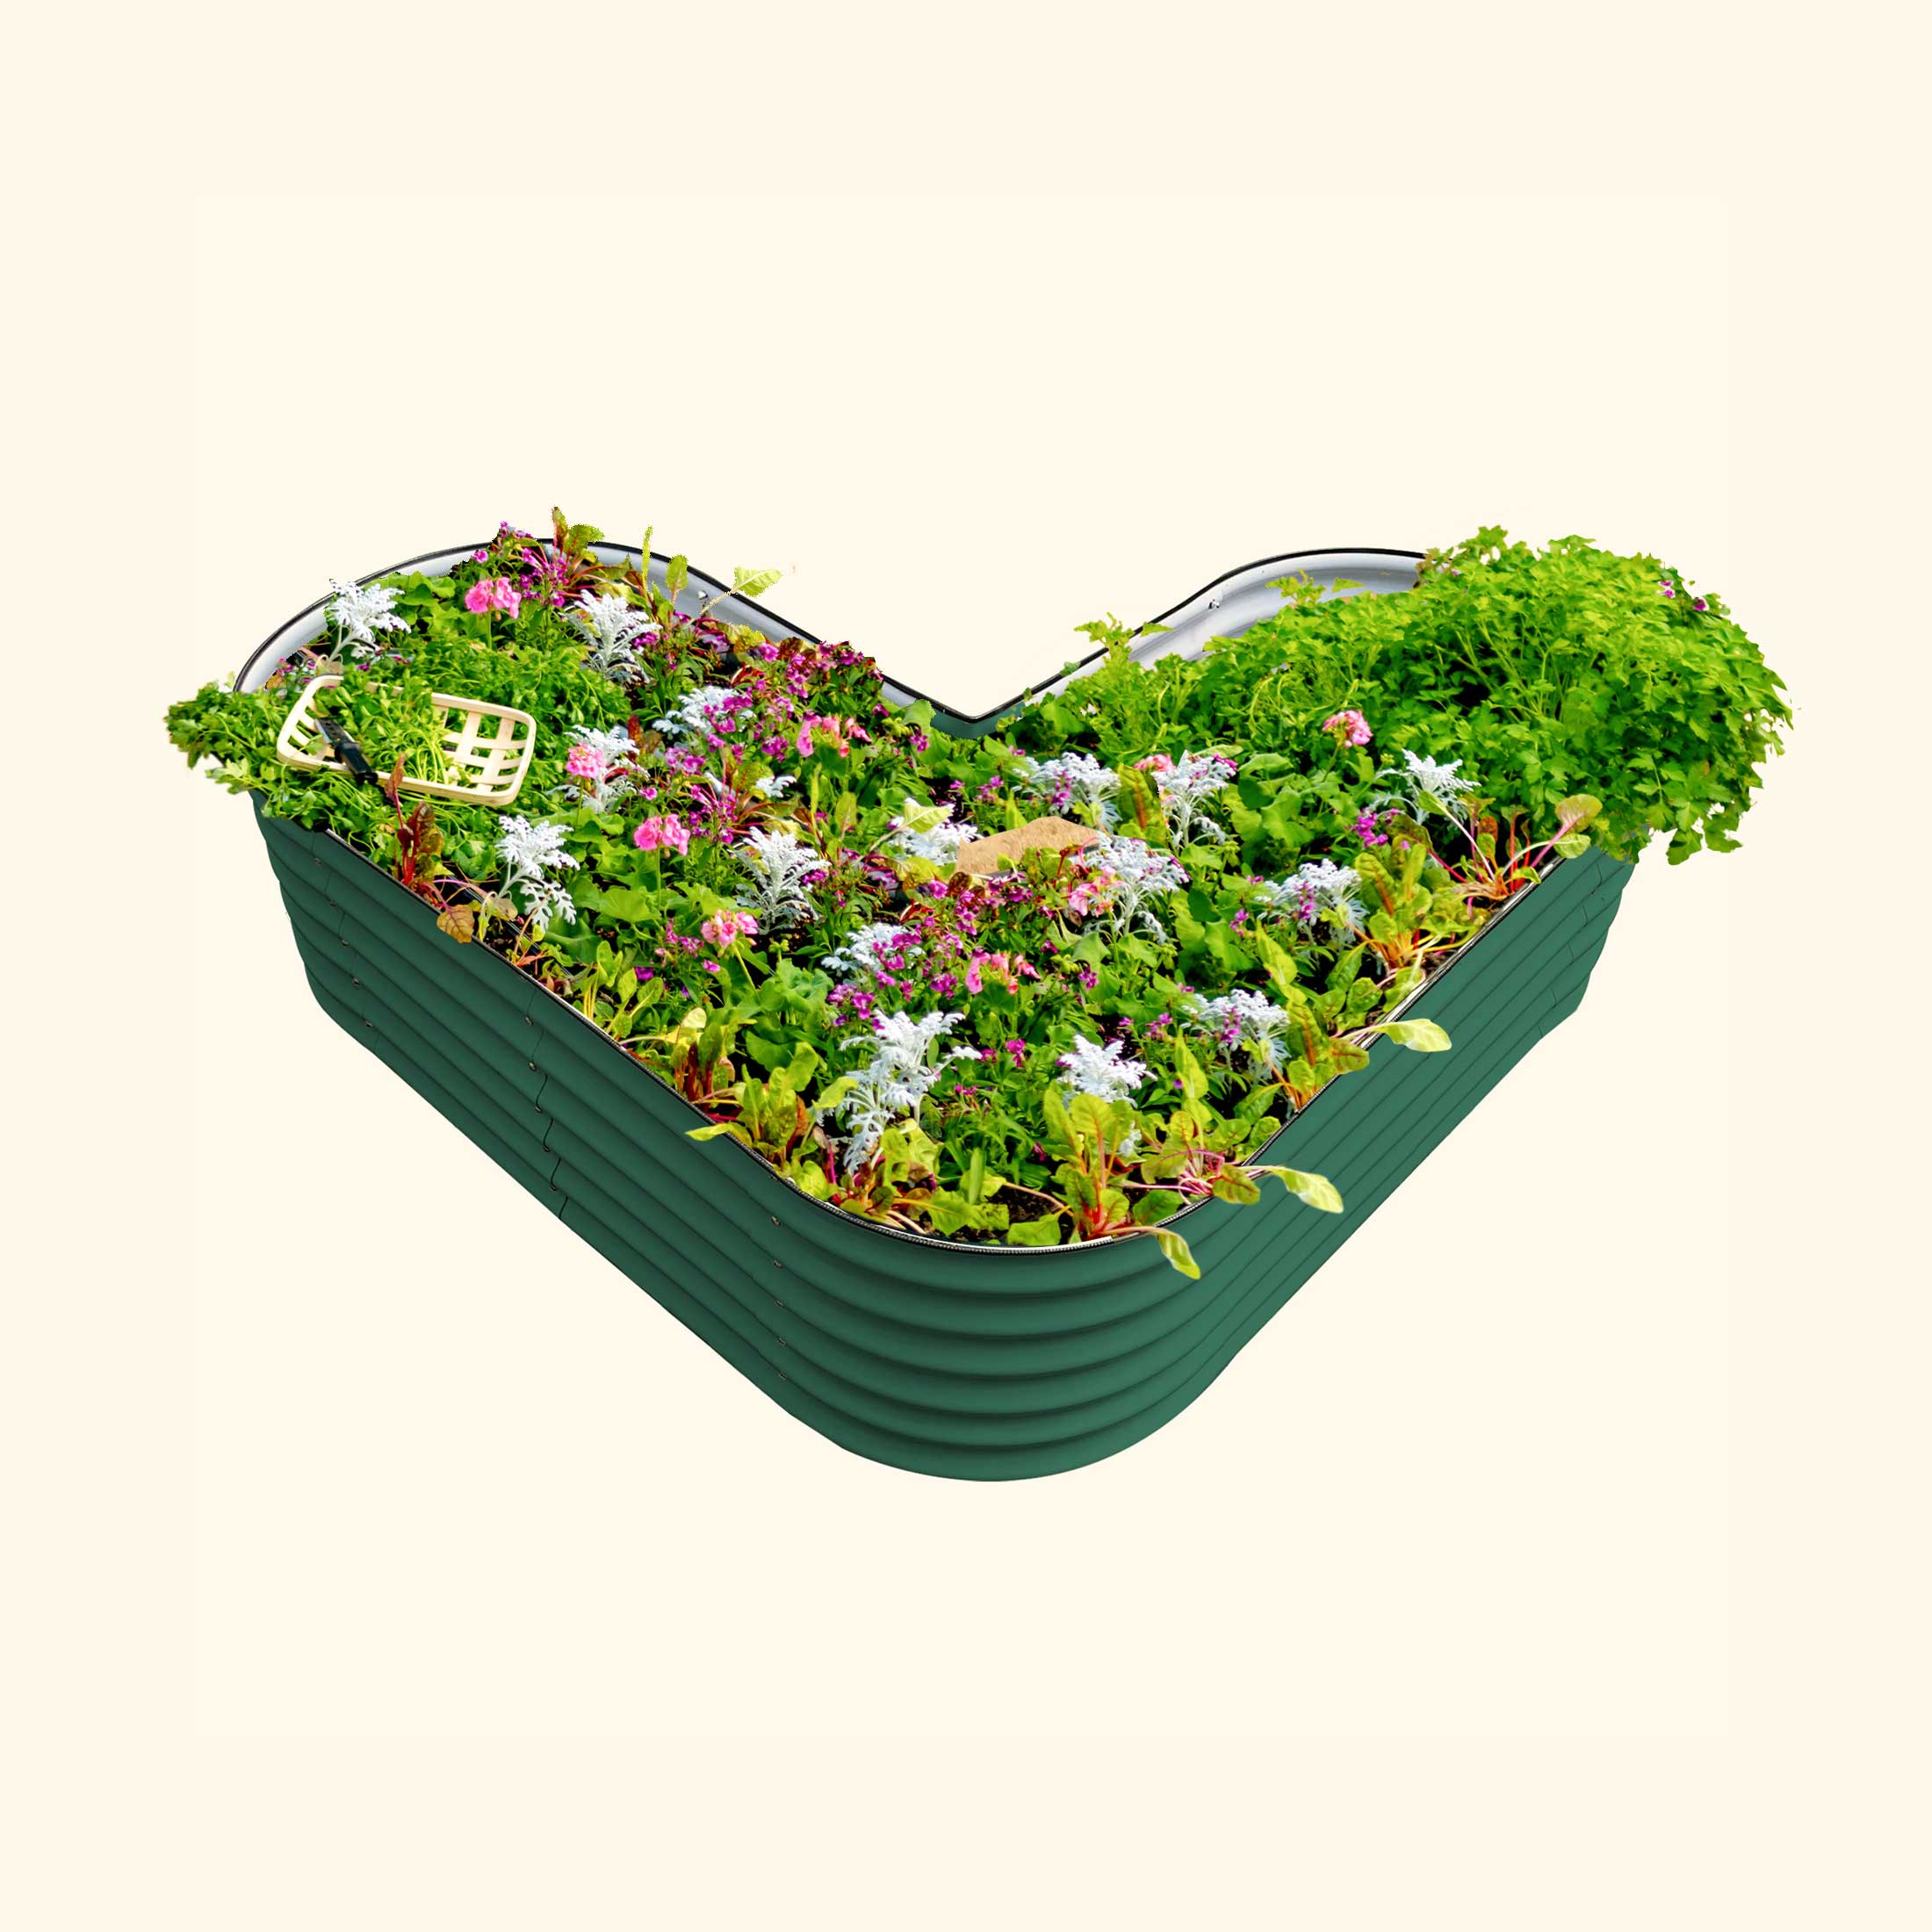 17 tall L-shaped metal garden container - Standard Size | British Green | Vego Garden raised garden bed